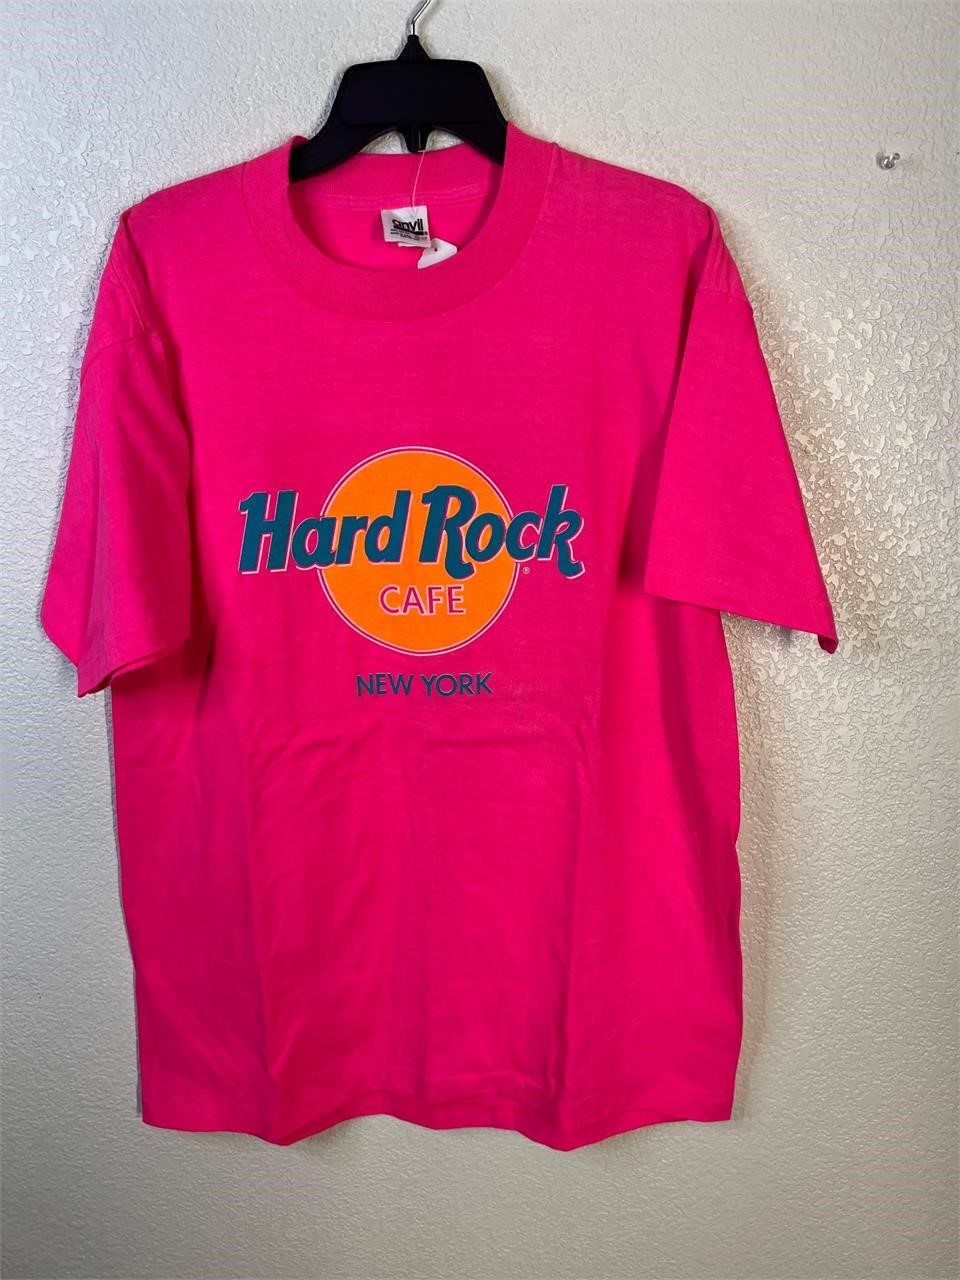 Vintage Hard Rock Cafe Shirt Unworn